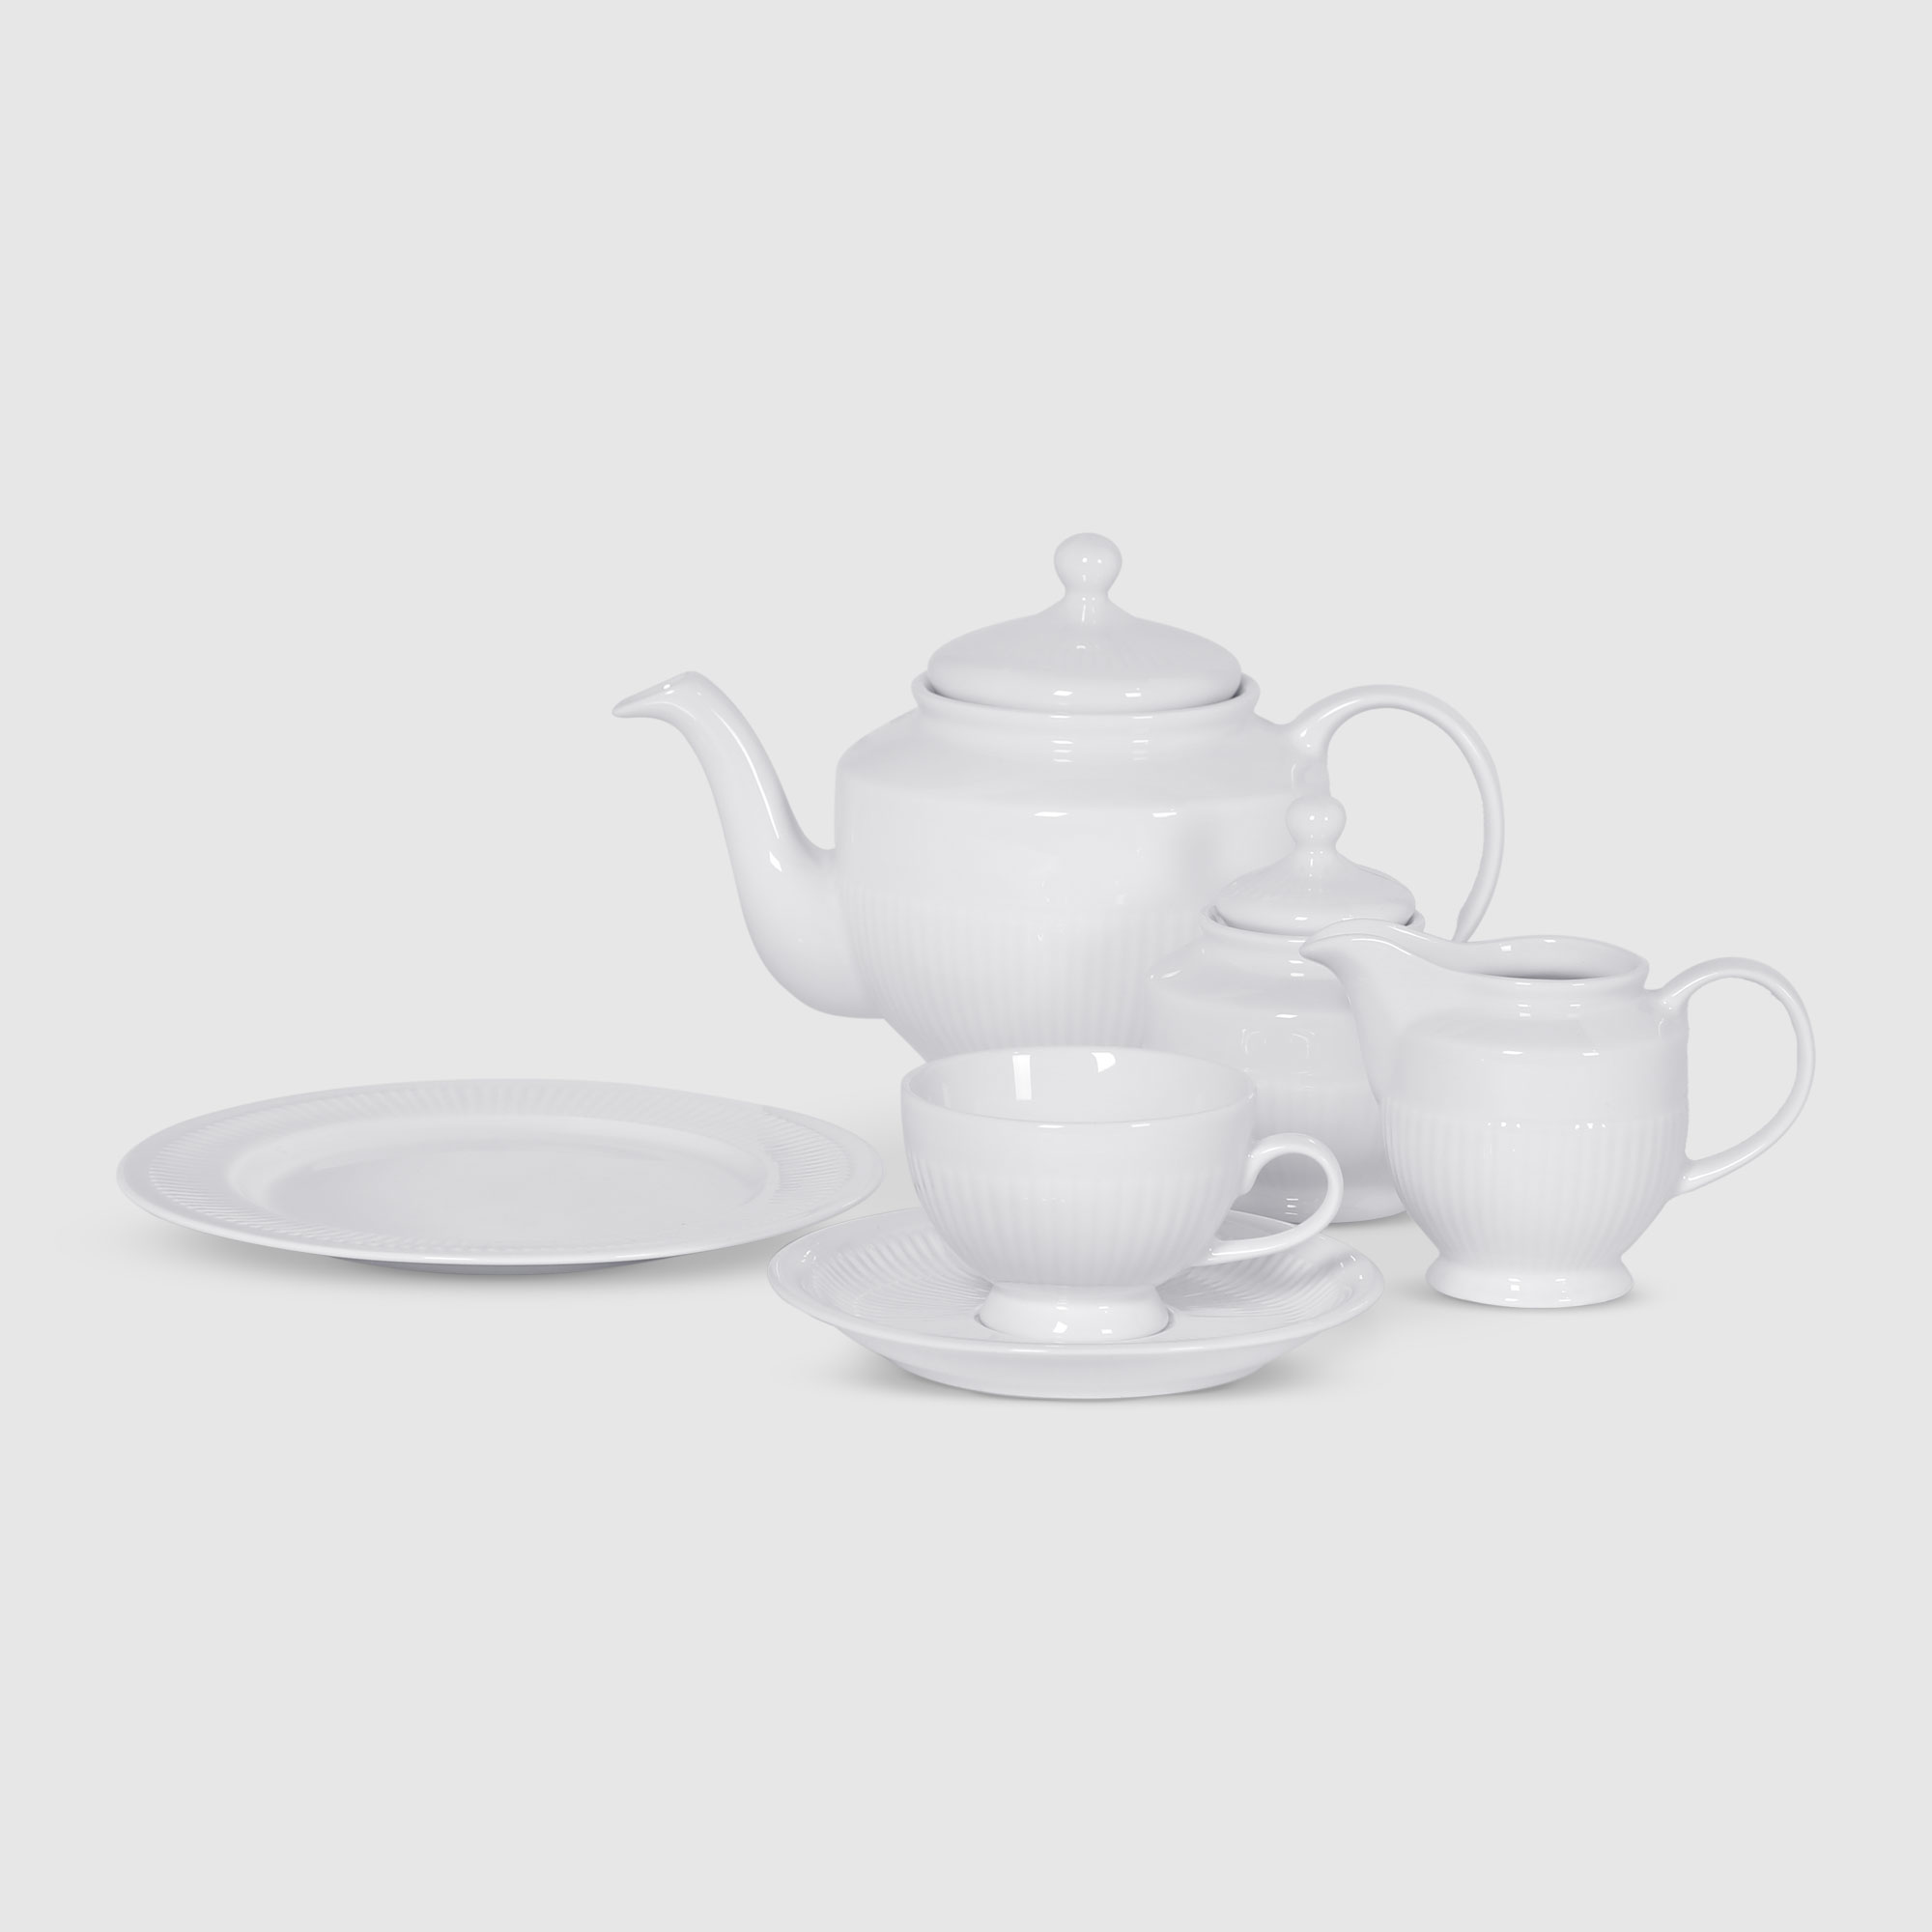 Сервиз чайный Porcelana Bogucice Minos White 21 предмет 6 персон сервиз столовый macbeth bone porcelain garden 21 предмет